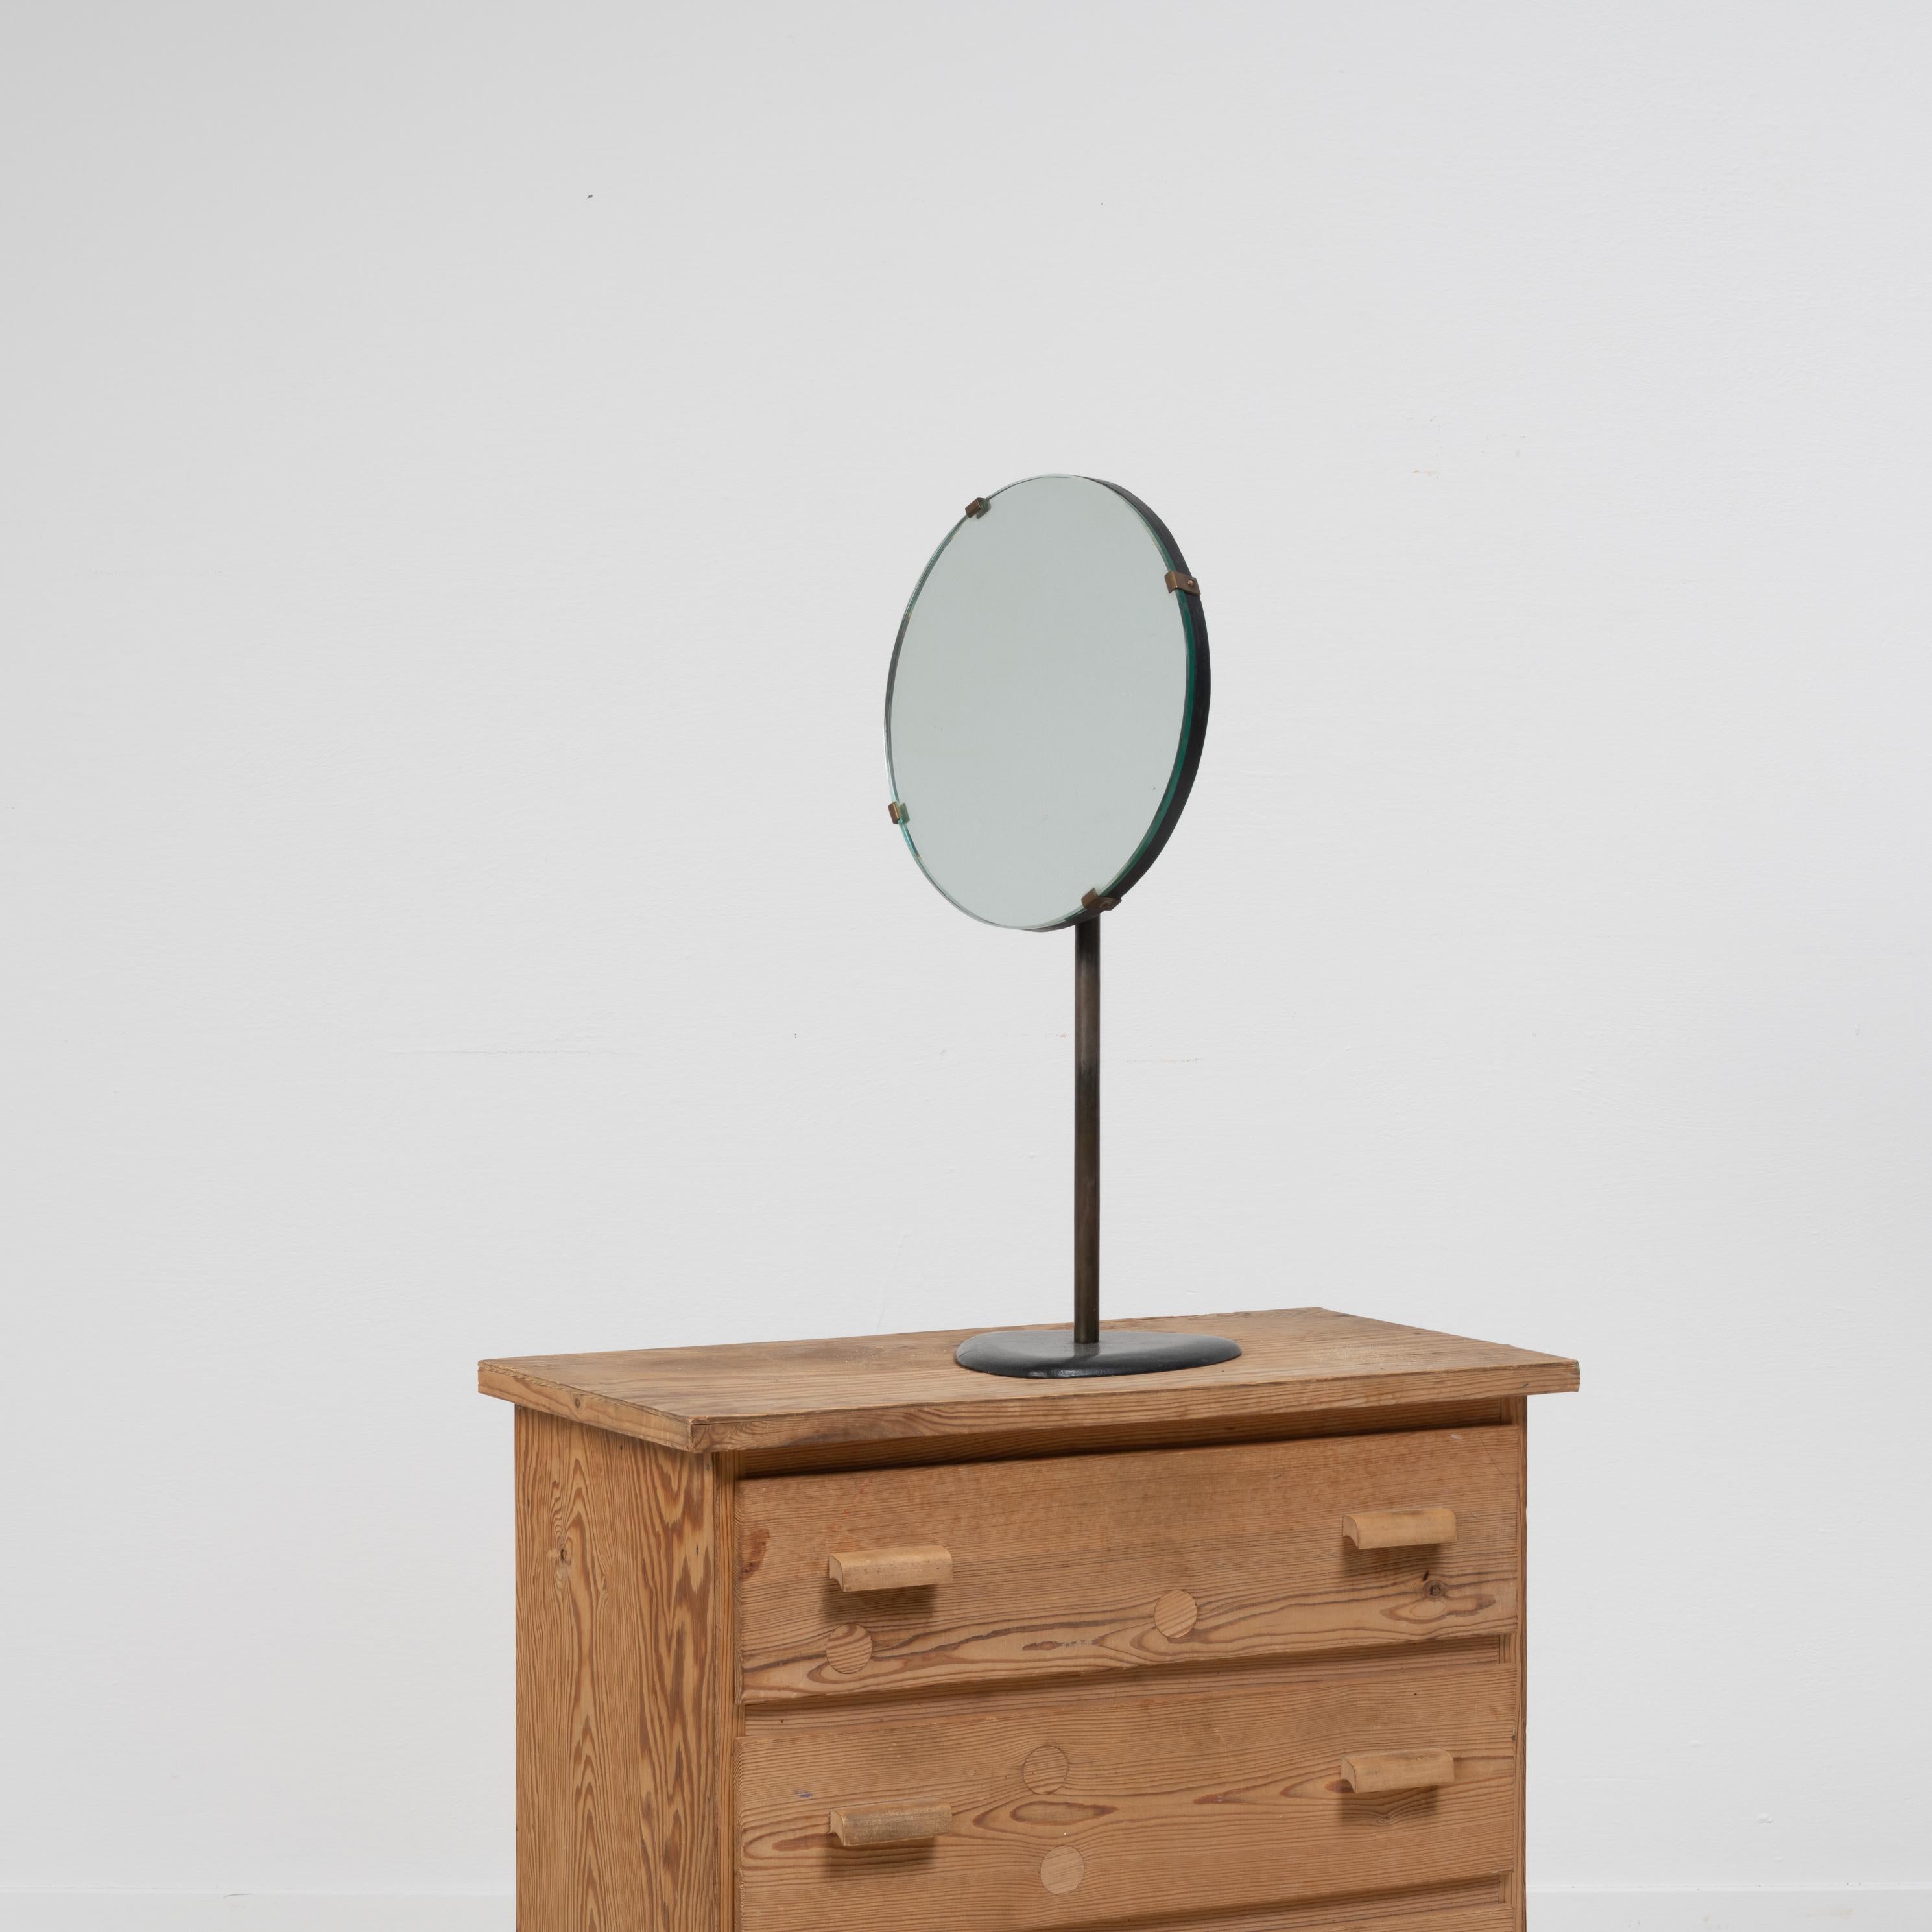 Schwedischer Art-Déco-Tischspiegel aus den 1930er Jahren. Der Spiegel ist schlicht und einfach mit einem zeitlosen und klassischen Design, das zu jedem Stil passt. Der Spiegel ist eher klein und hat eine gute Größe, um z.B. auf einem Flur oder einem